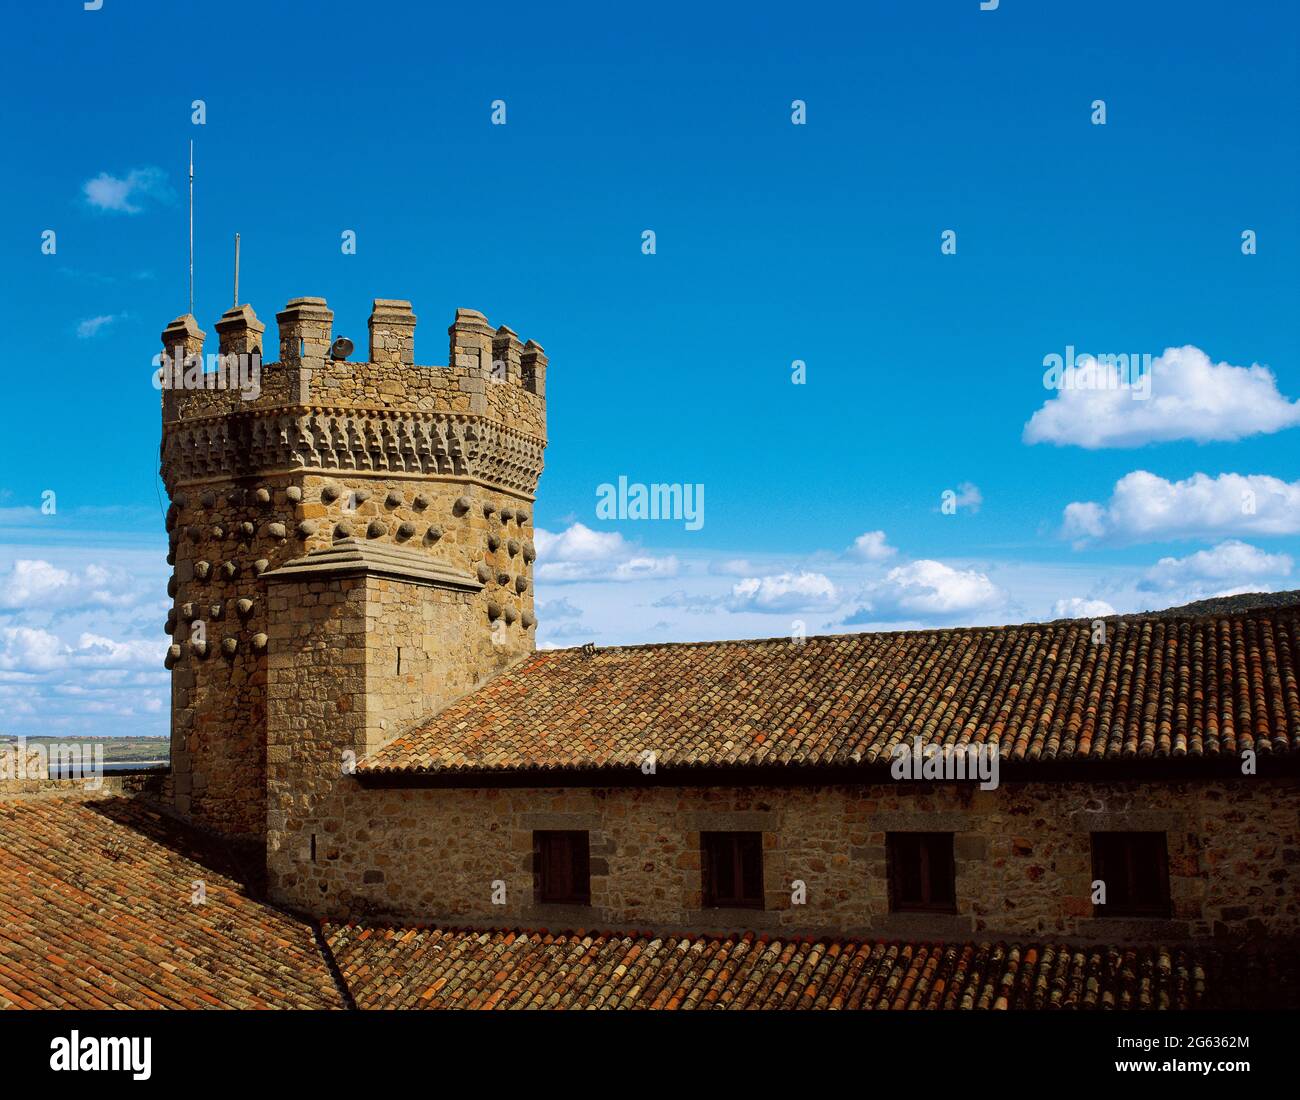 Spanien, Gemeinde Madrid, Burg Manzanares El Real. Erbaut im Jahr 1475 im Auftrag von Diego Hurtado de Mendoza, war die Residenz der Mendoza-Familie bis Ende des 16. Jahrhunderts. Blick auf den Homage Tower, der mit Bällen dekoriert und in Kalkstein-Rauten im elisabethanischen Stil gerahmt ist. Stockfoto